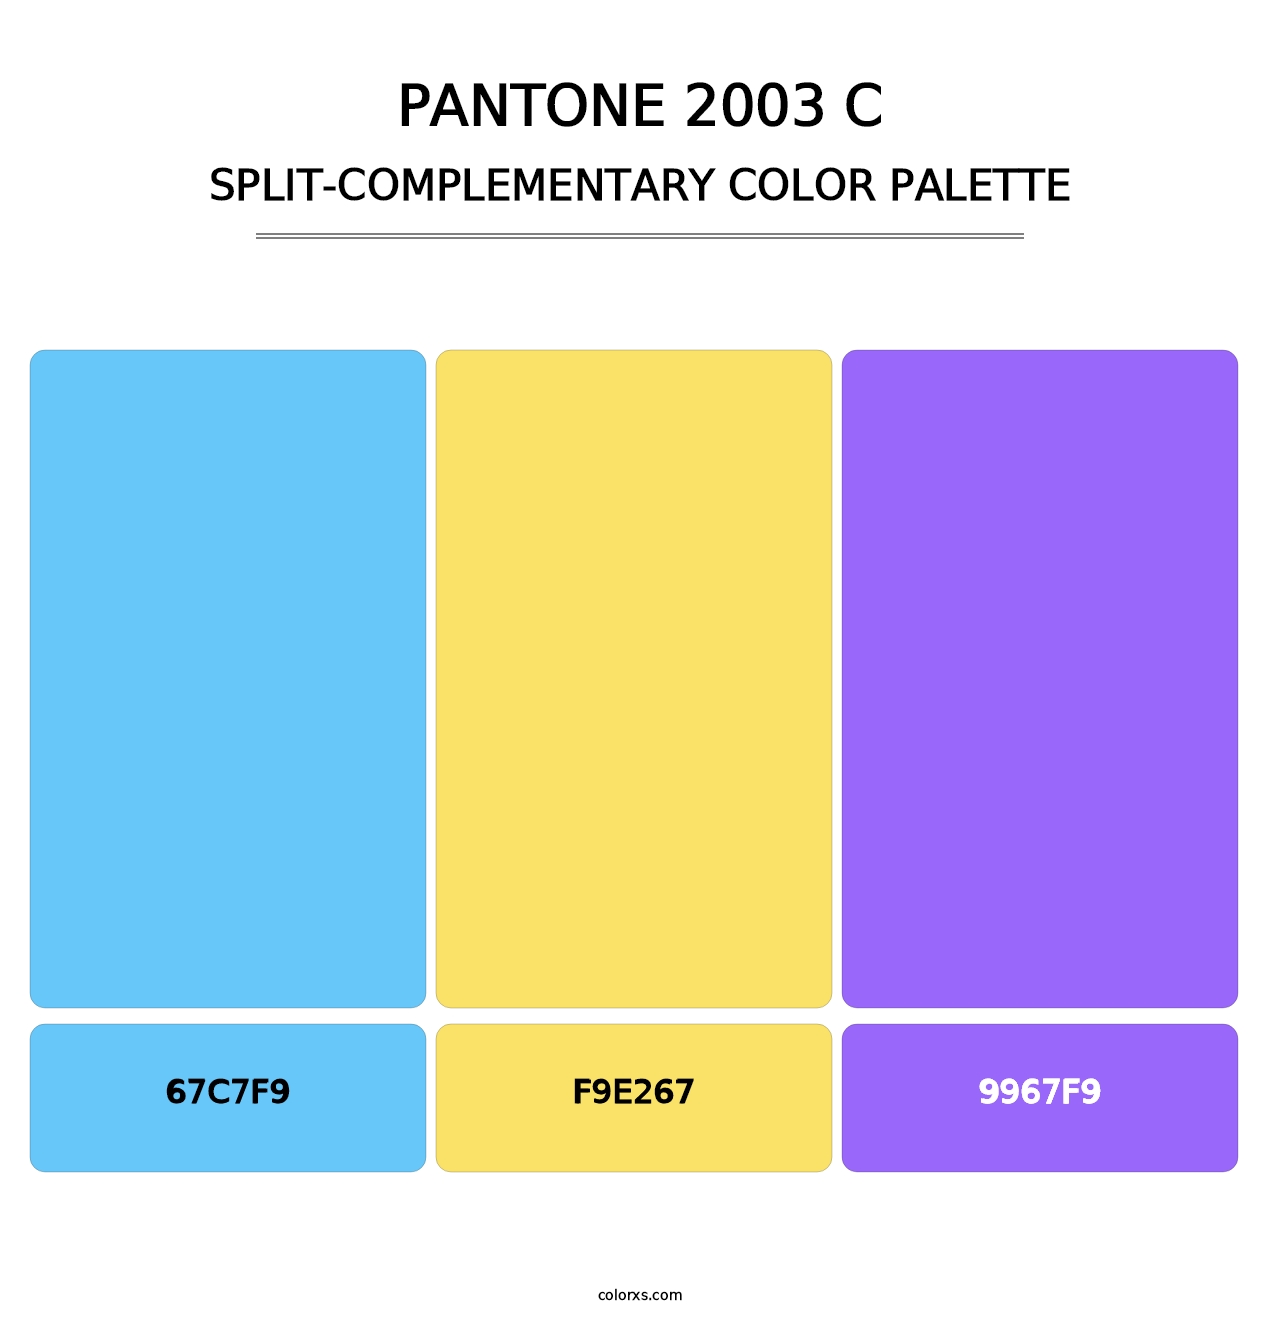 PANTONE 2003 C - Split-Complementary Color Palette